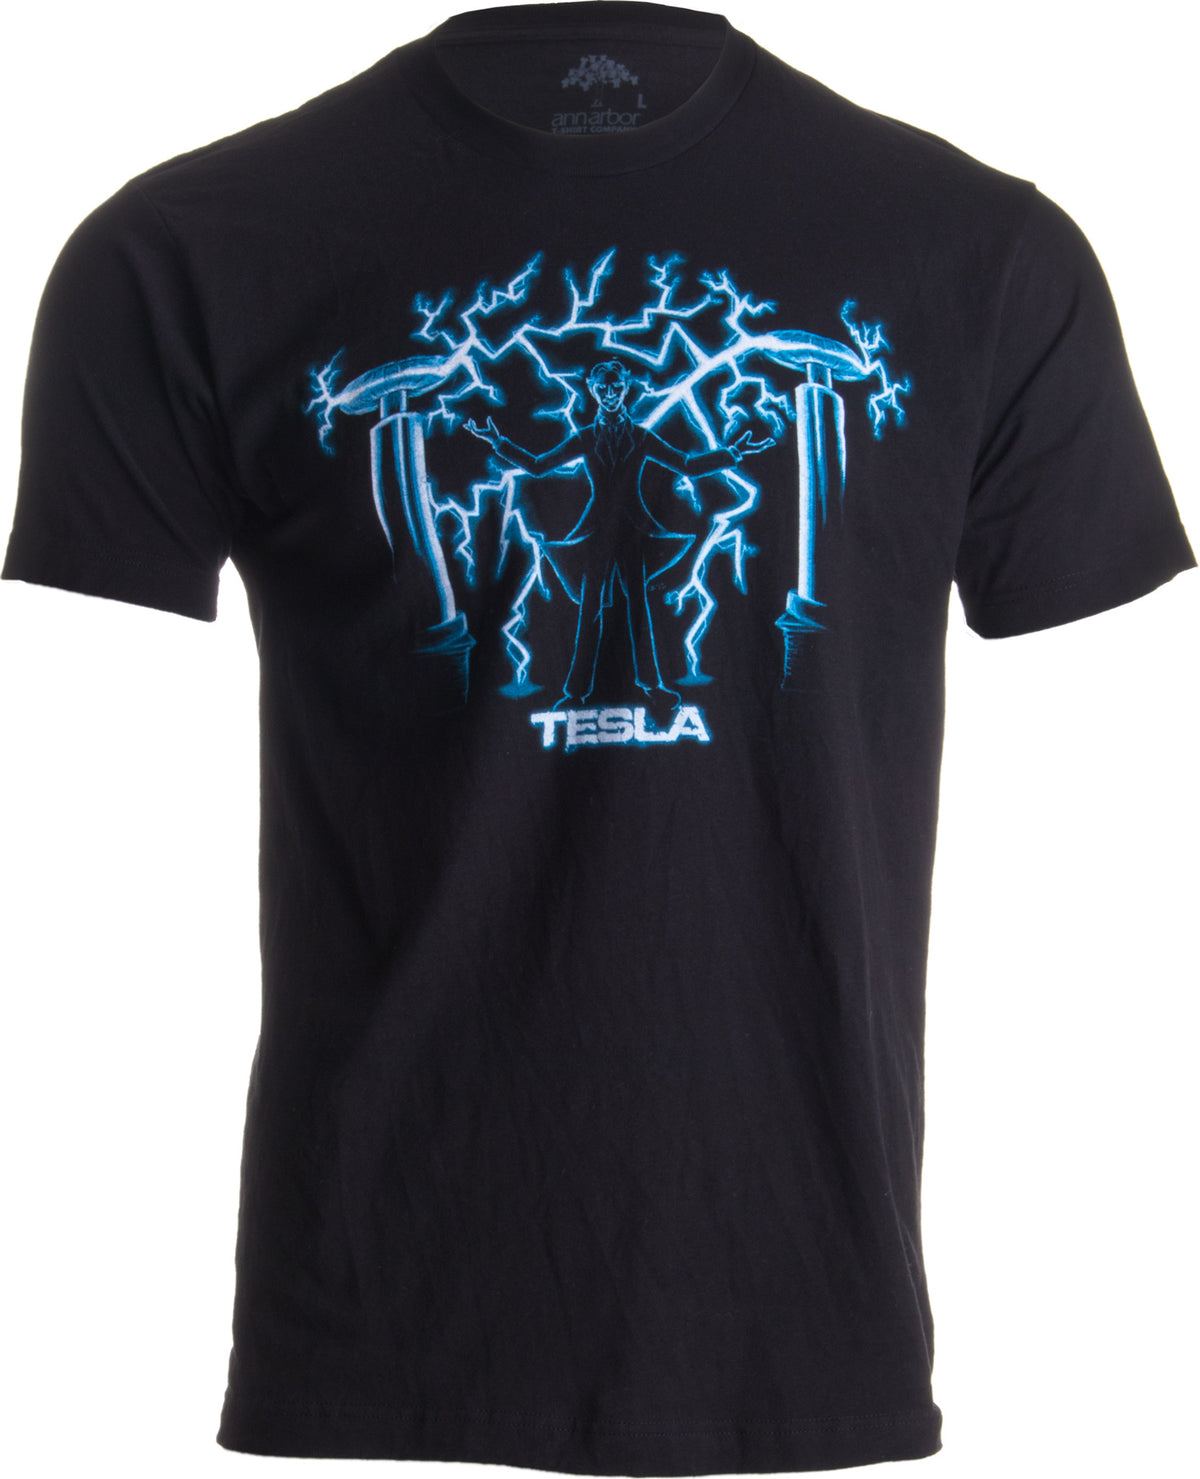 Nikola Tesla, Mad Scientist | Unisex Science Engineering Geek Humor T-shirt